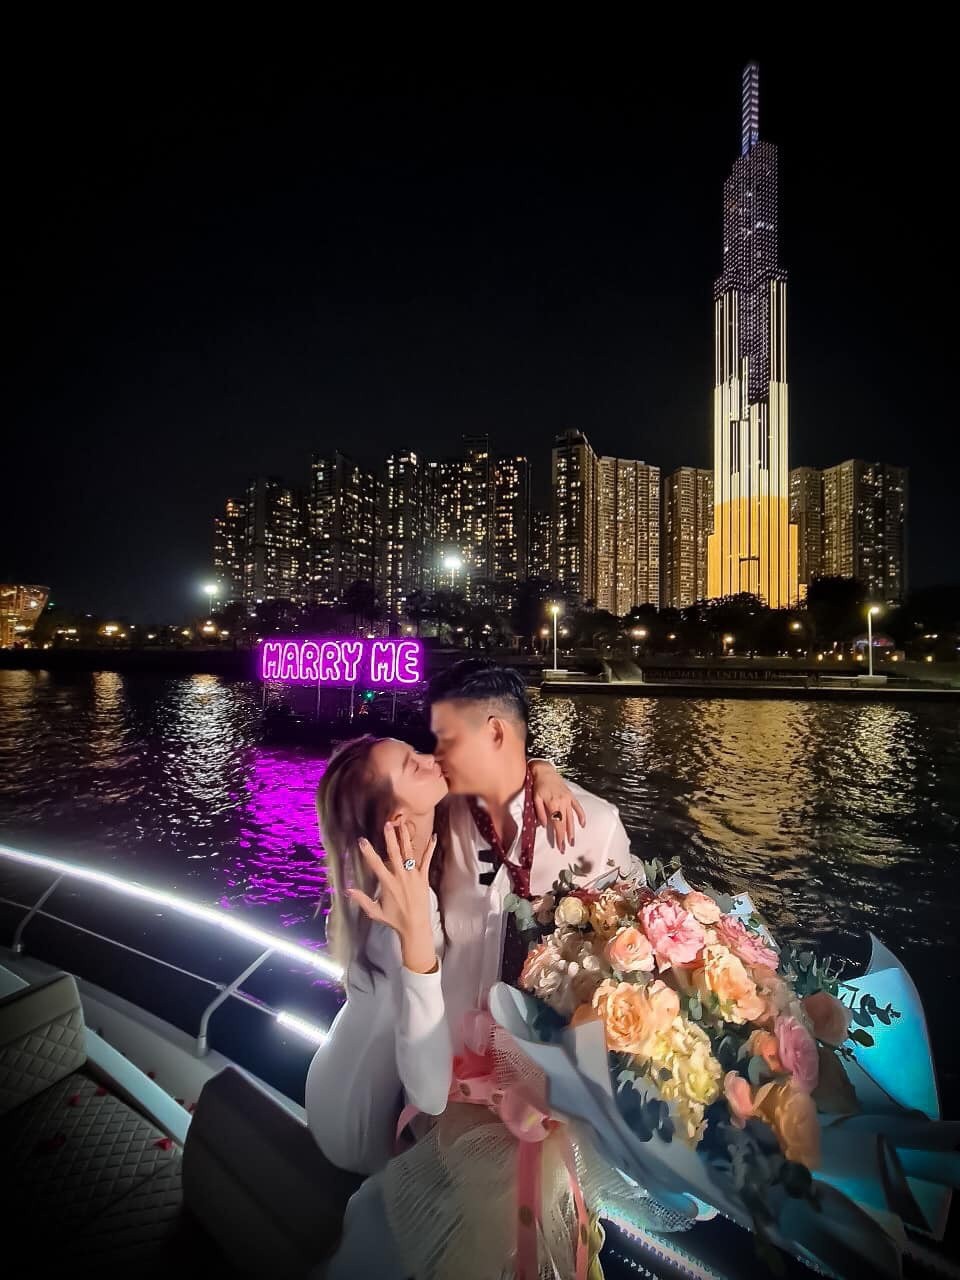 
Vào ngày 14/3, Minh Hằng khiến MXH dậy sóng khi đăng tải khoảnh khắc khóa môi với bạn trai đầy ngọt ngào và lãng mạn trên du thuyền
